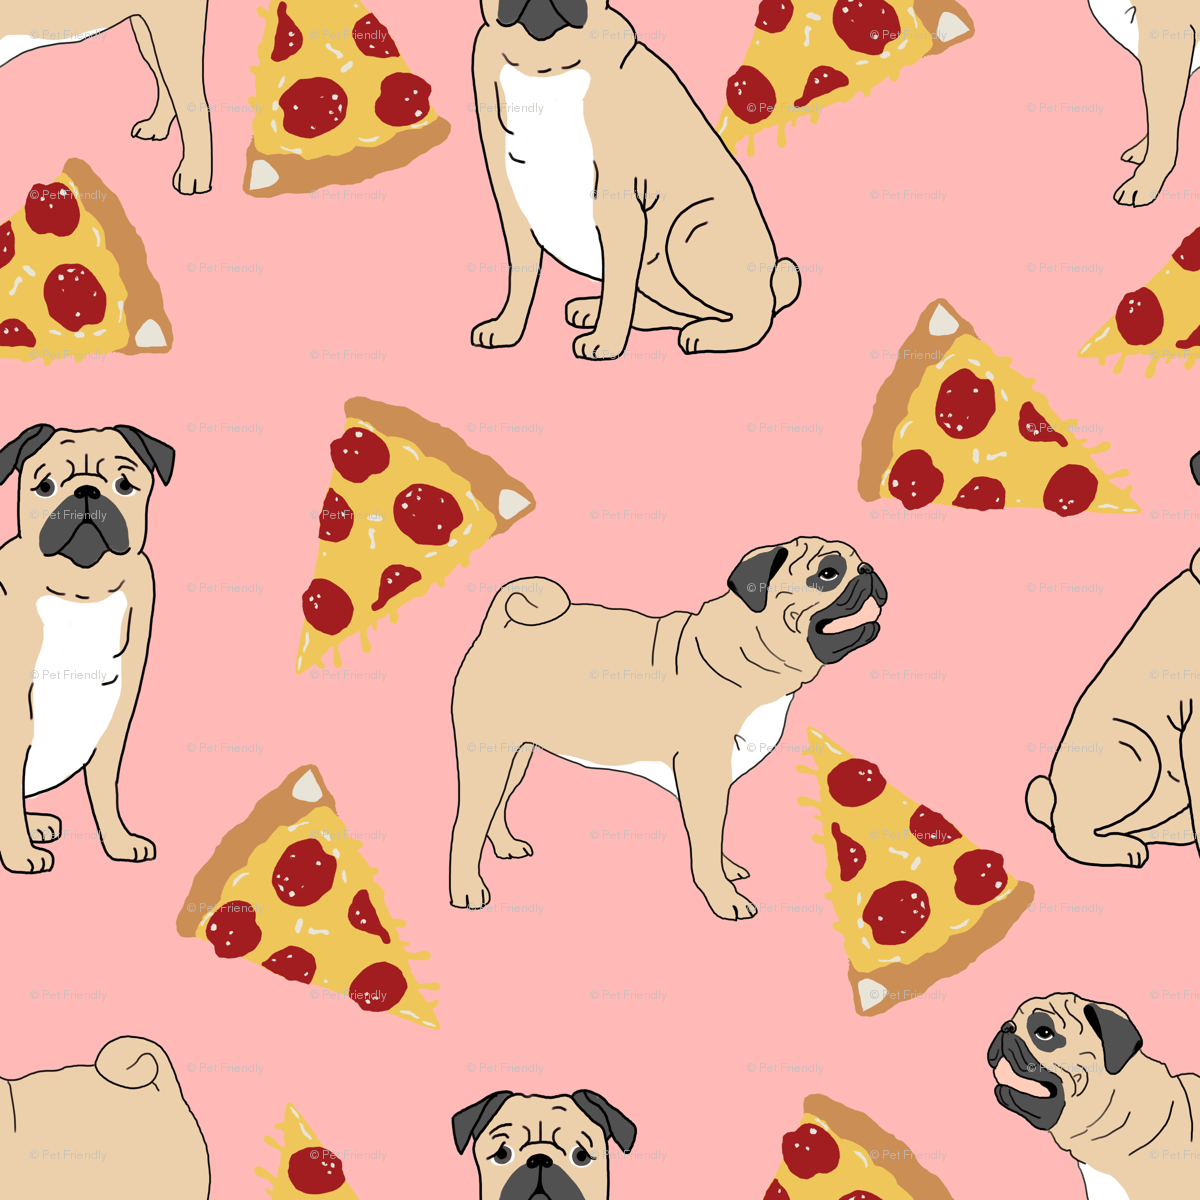 Cute Cartoon Dog Wallpapers - Top Những Hình Ảnh Đẹp